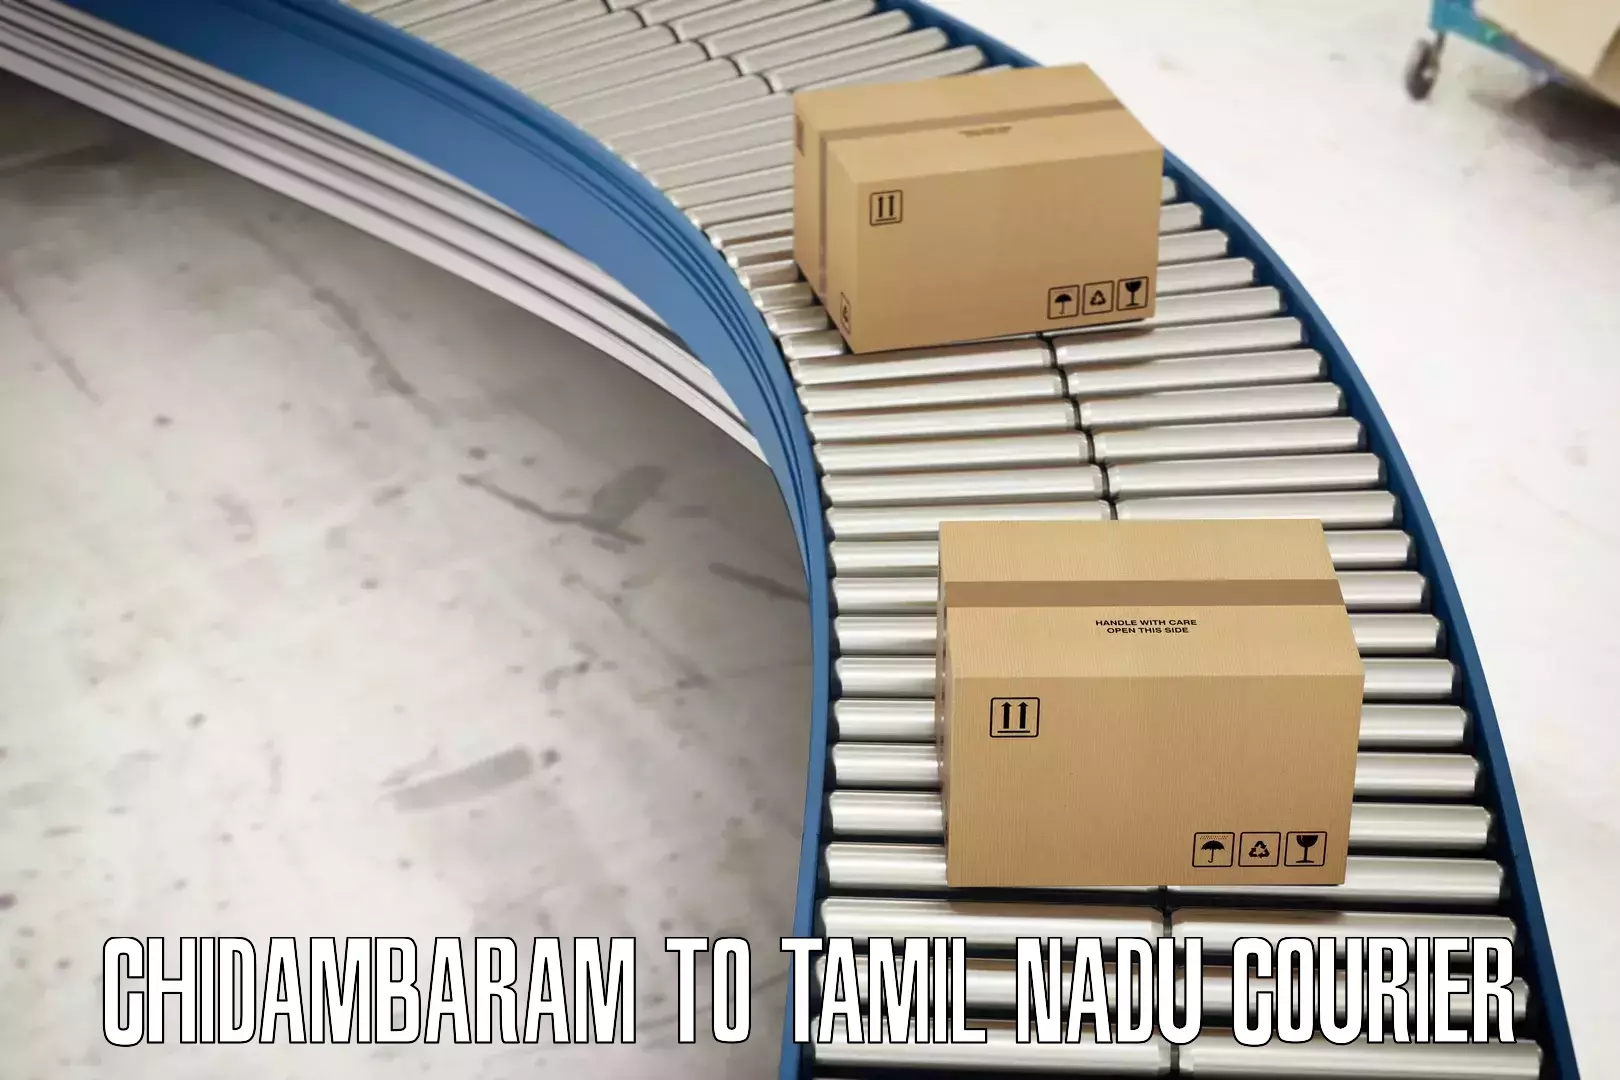 High-capacity parcel service Chidambaram to Tiruchi